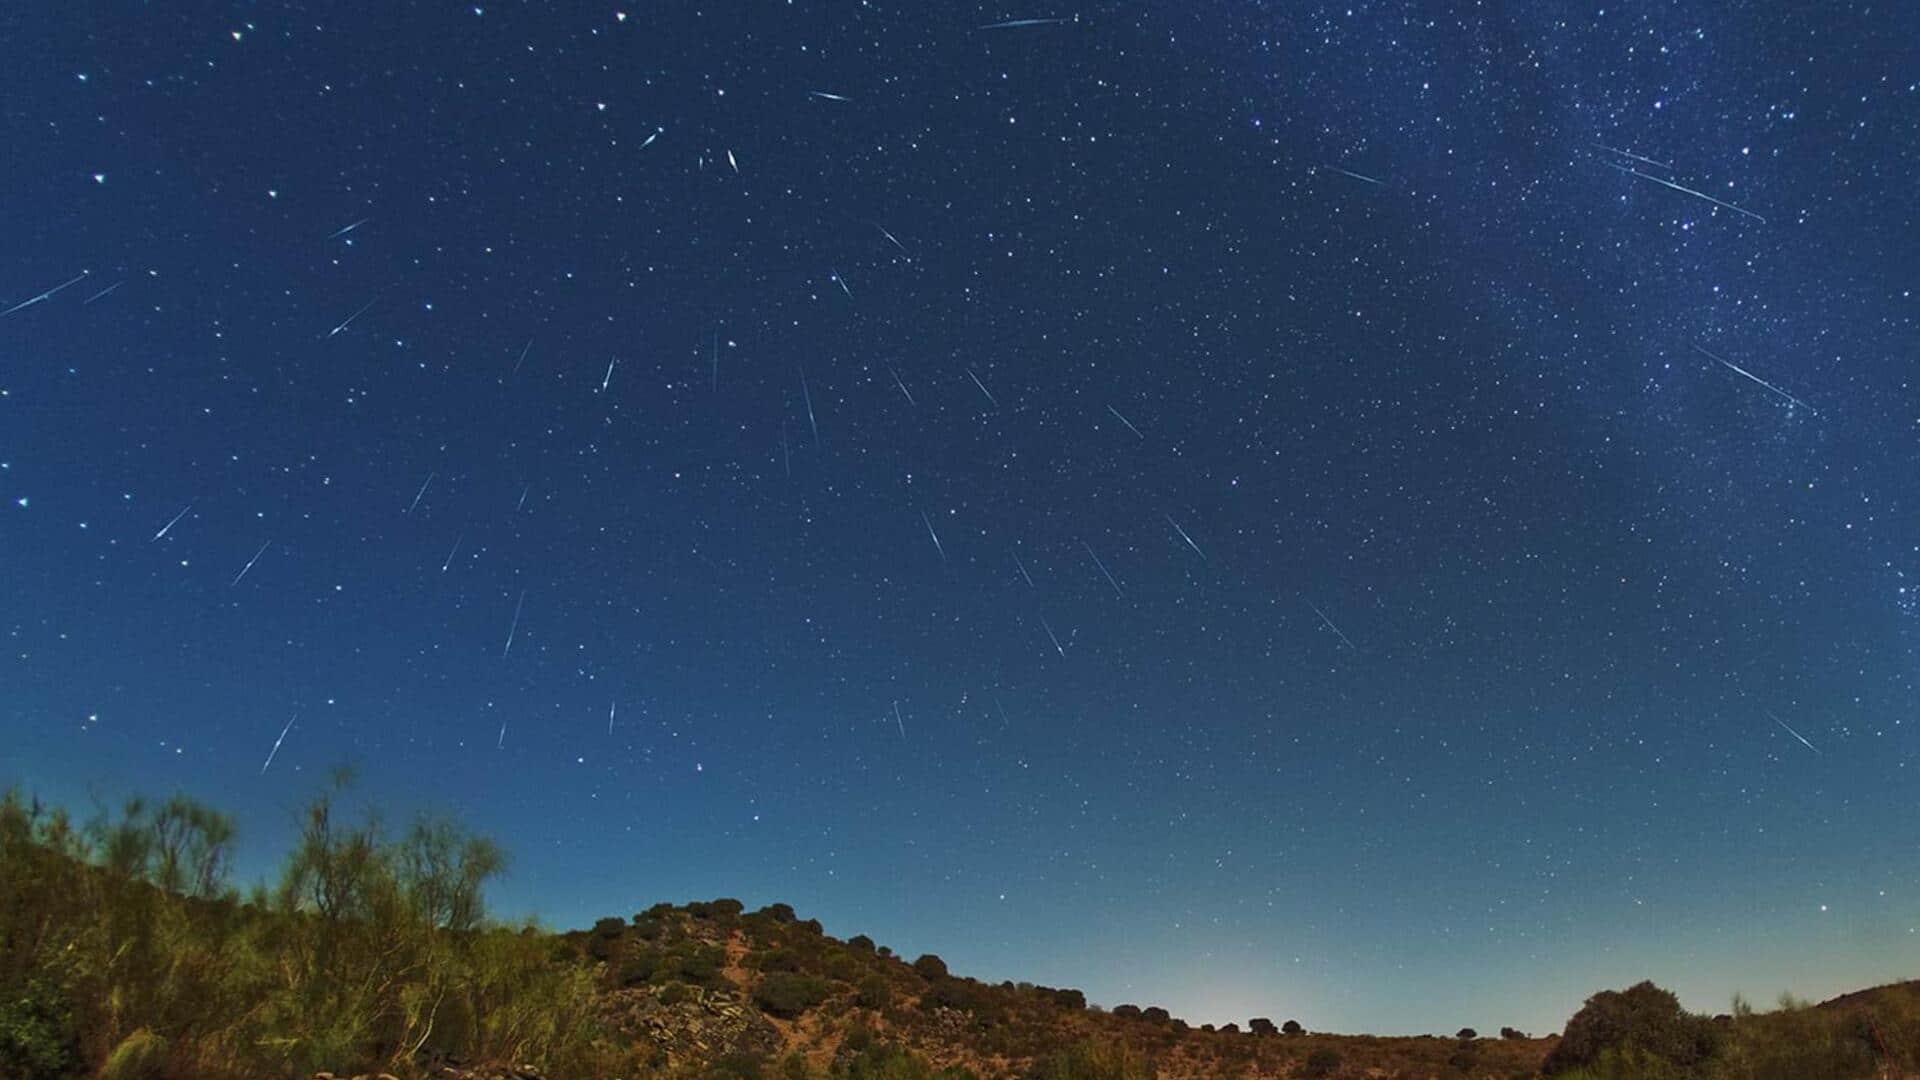 Draconid meteor shower peaks this weekend: How to watch